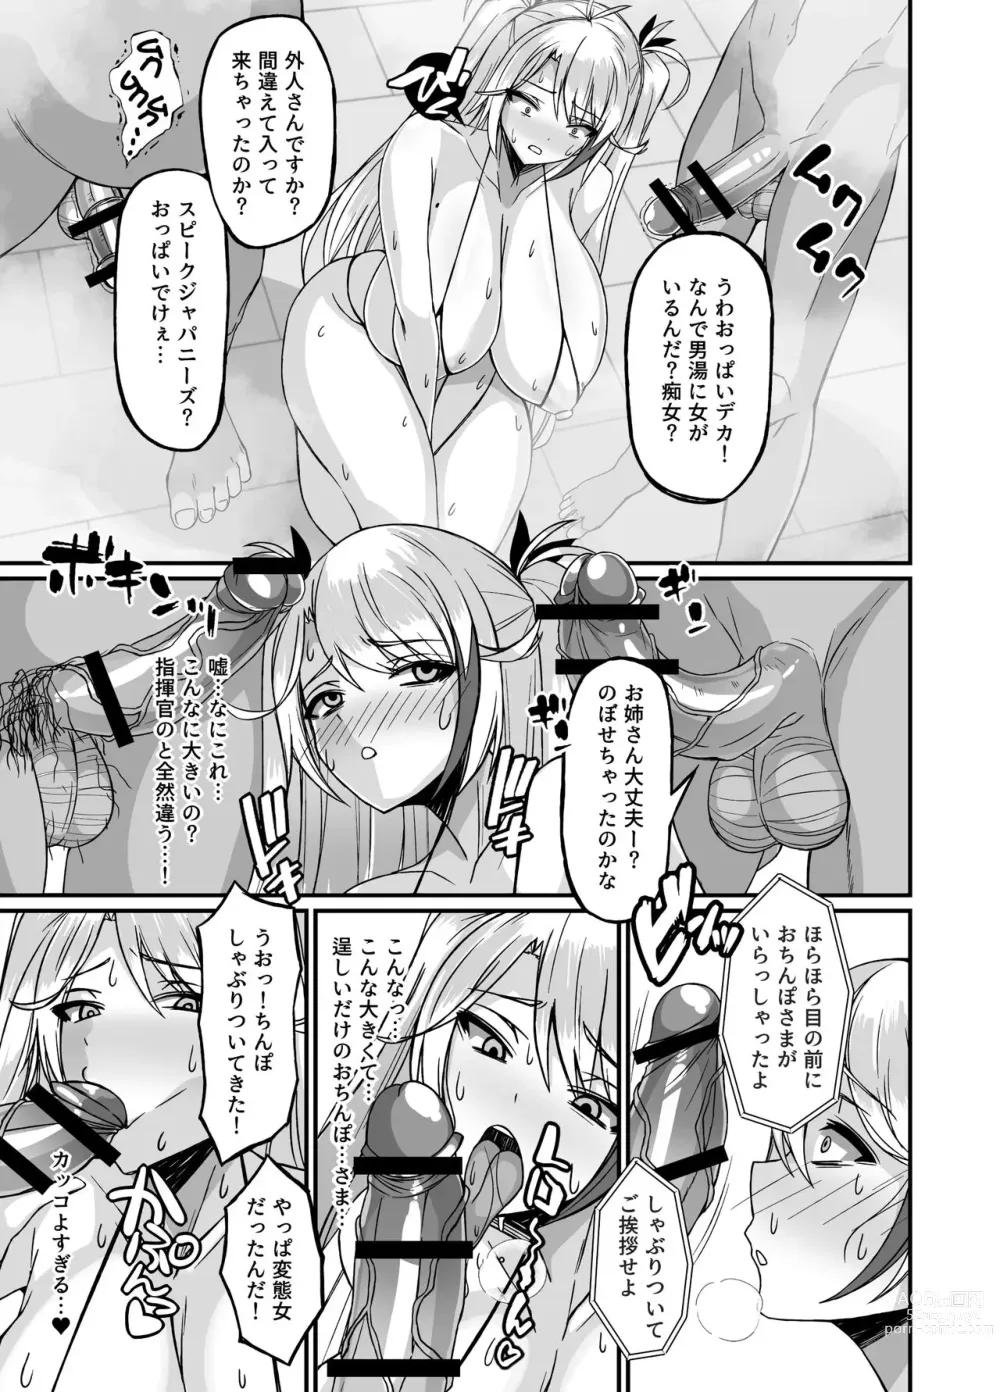 Page 7 of doujinshi Prinz Eugen Otokoyu Sennyuu Challenge